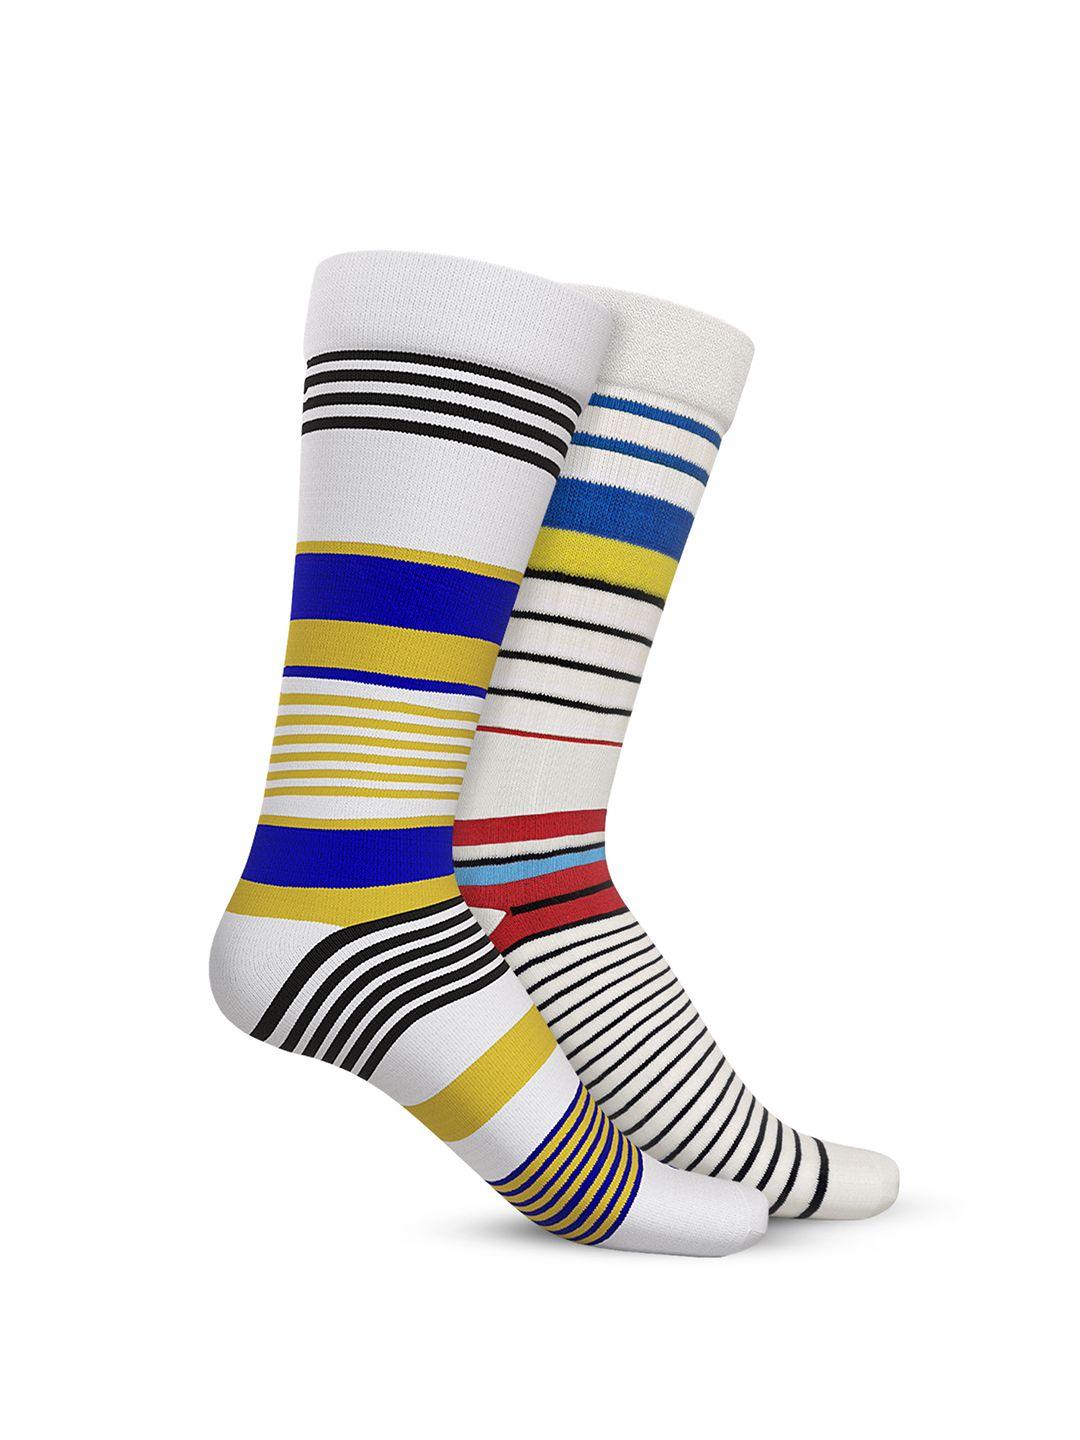 talkingsox-pack-of-2-striped-calf-length-socks